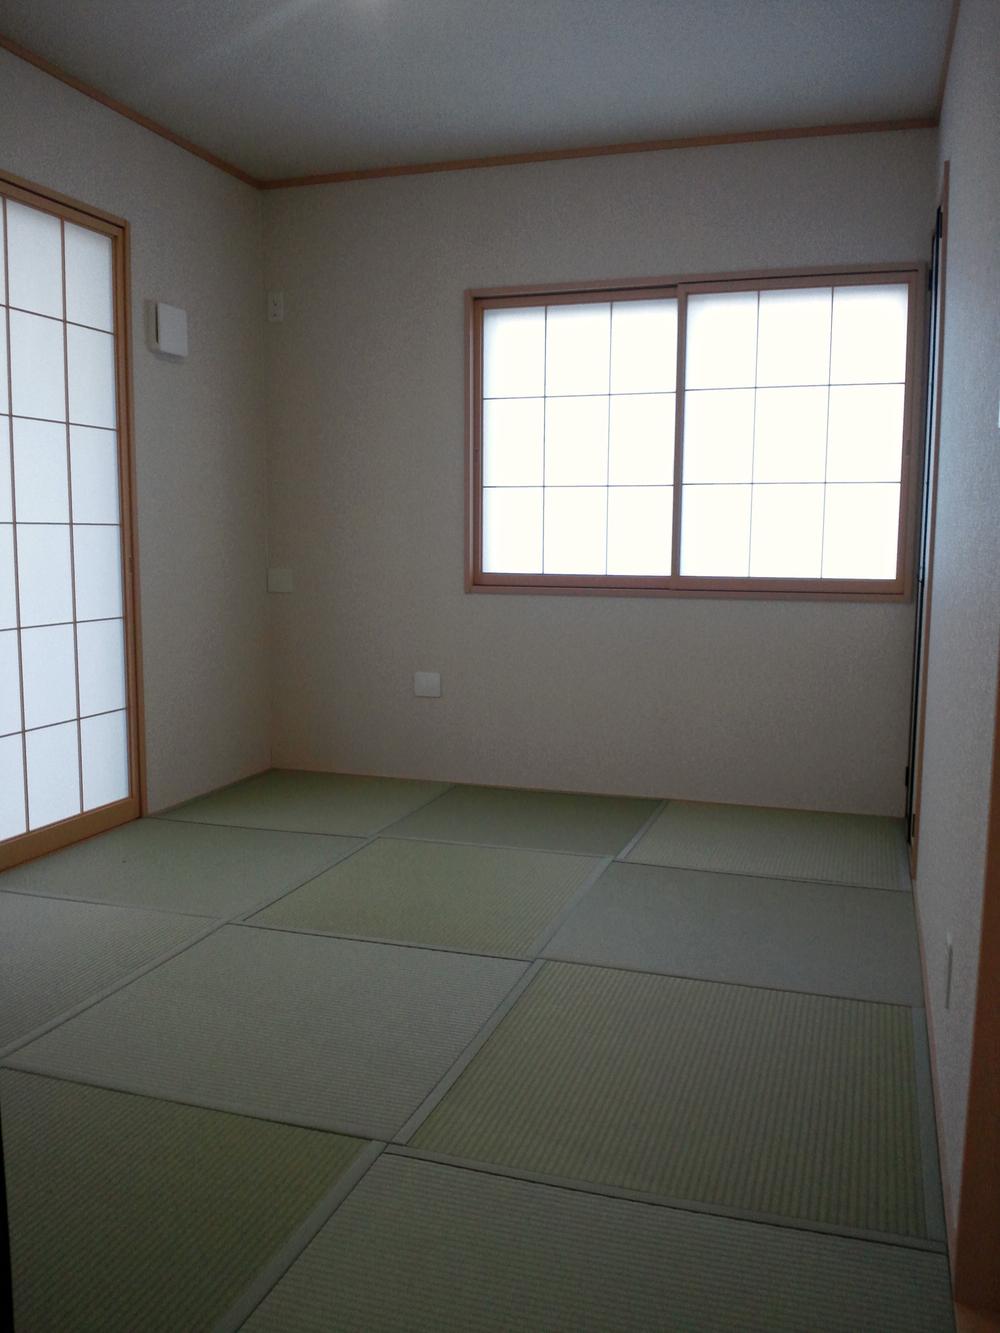 Non-living room. Indoor (December 13, 2013) Shooting